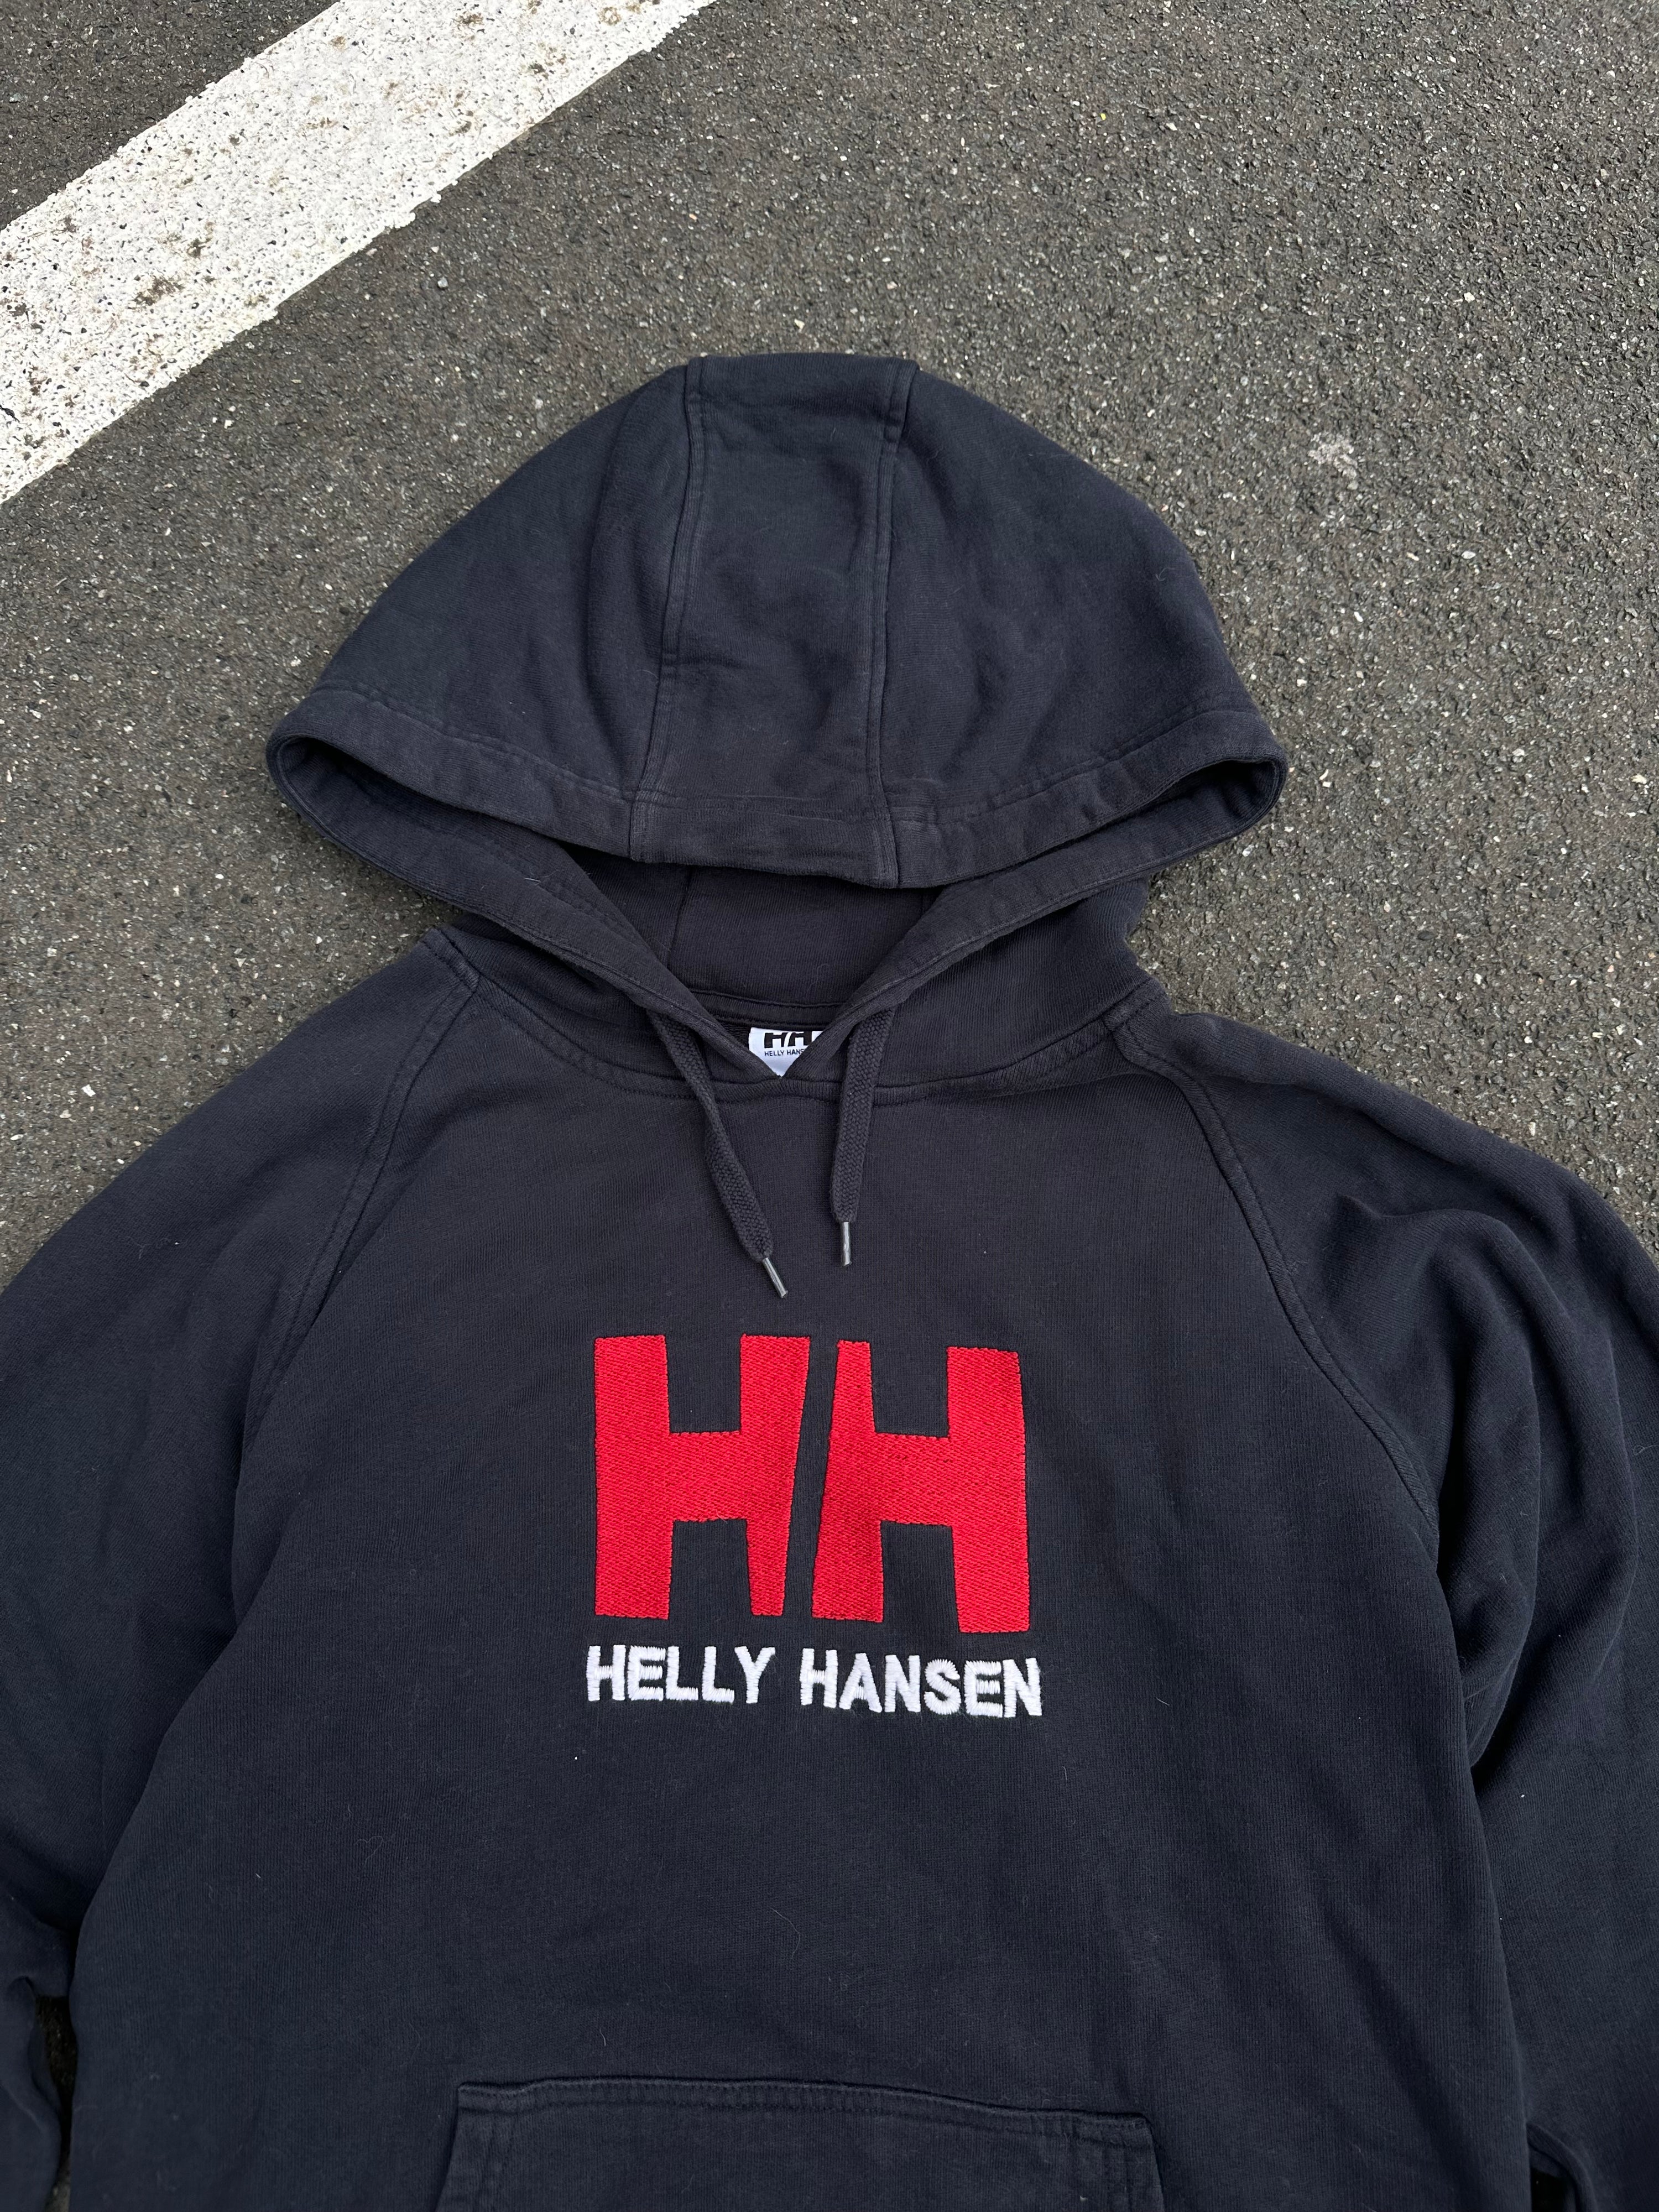 Helly Hansen embroidered Hoodie (M)